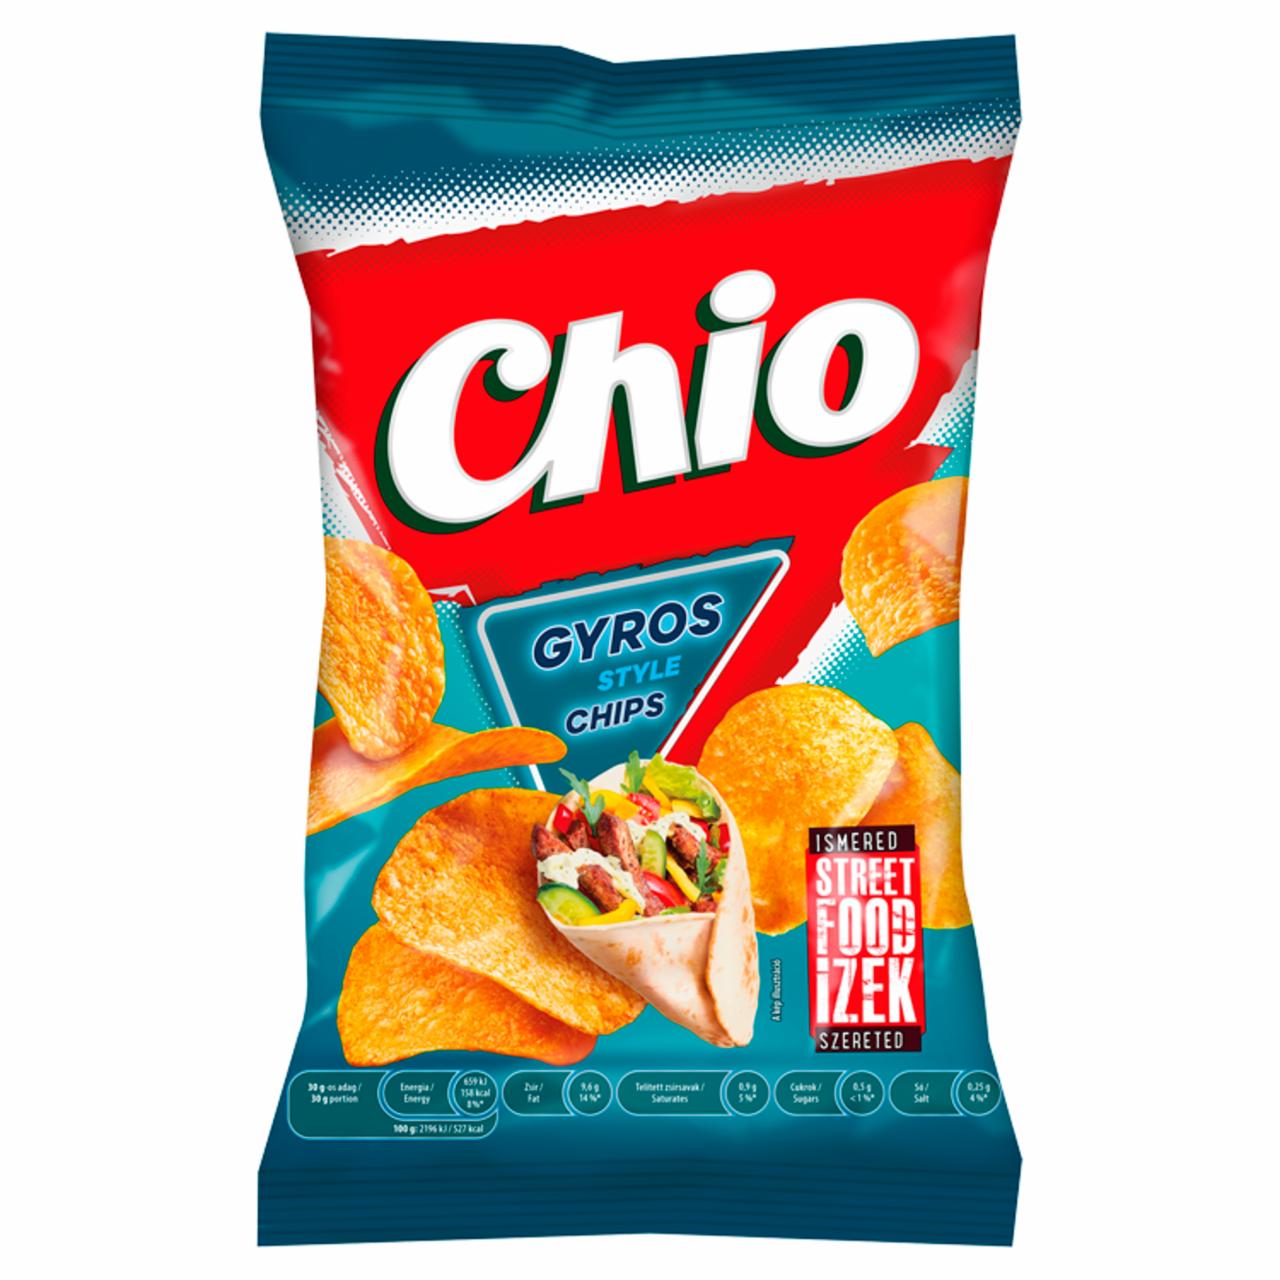 Képek - Chio Street Food Ízek gyros ízű chips 60 g